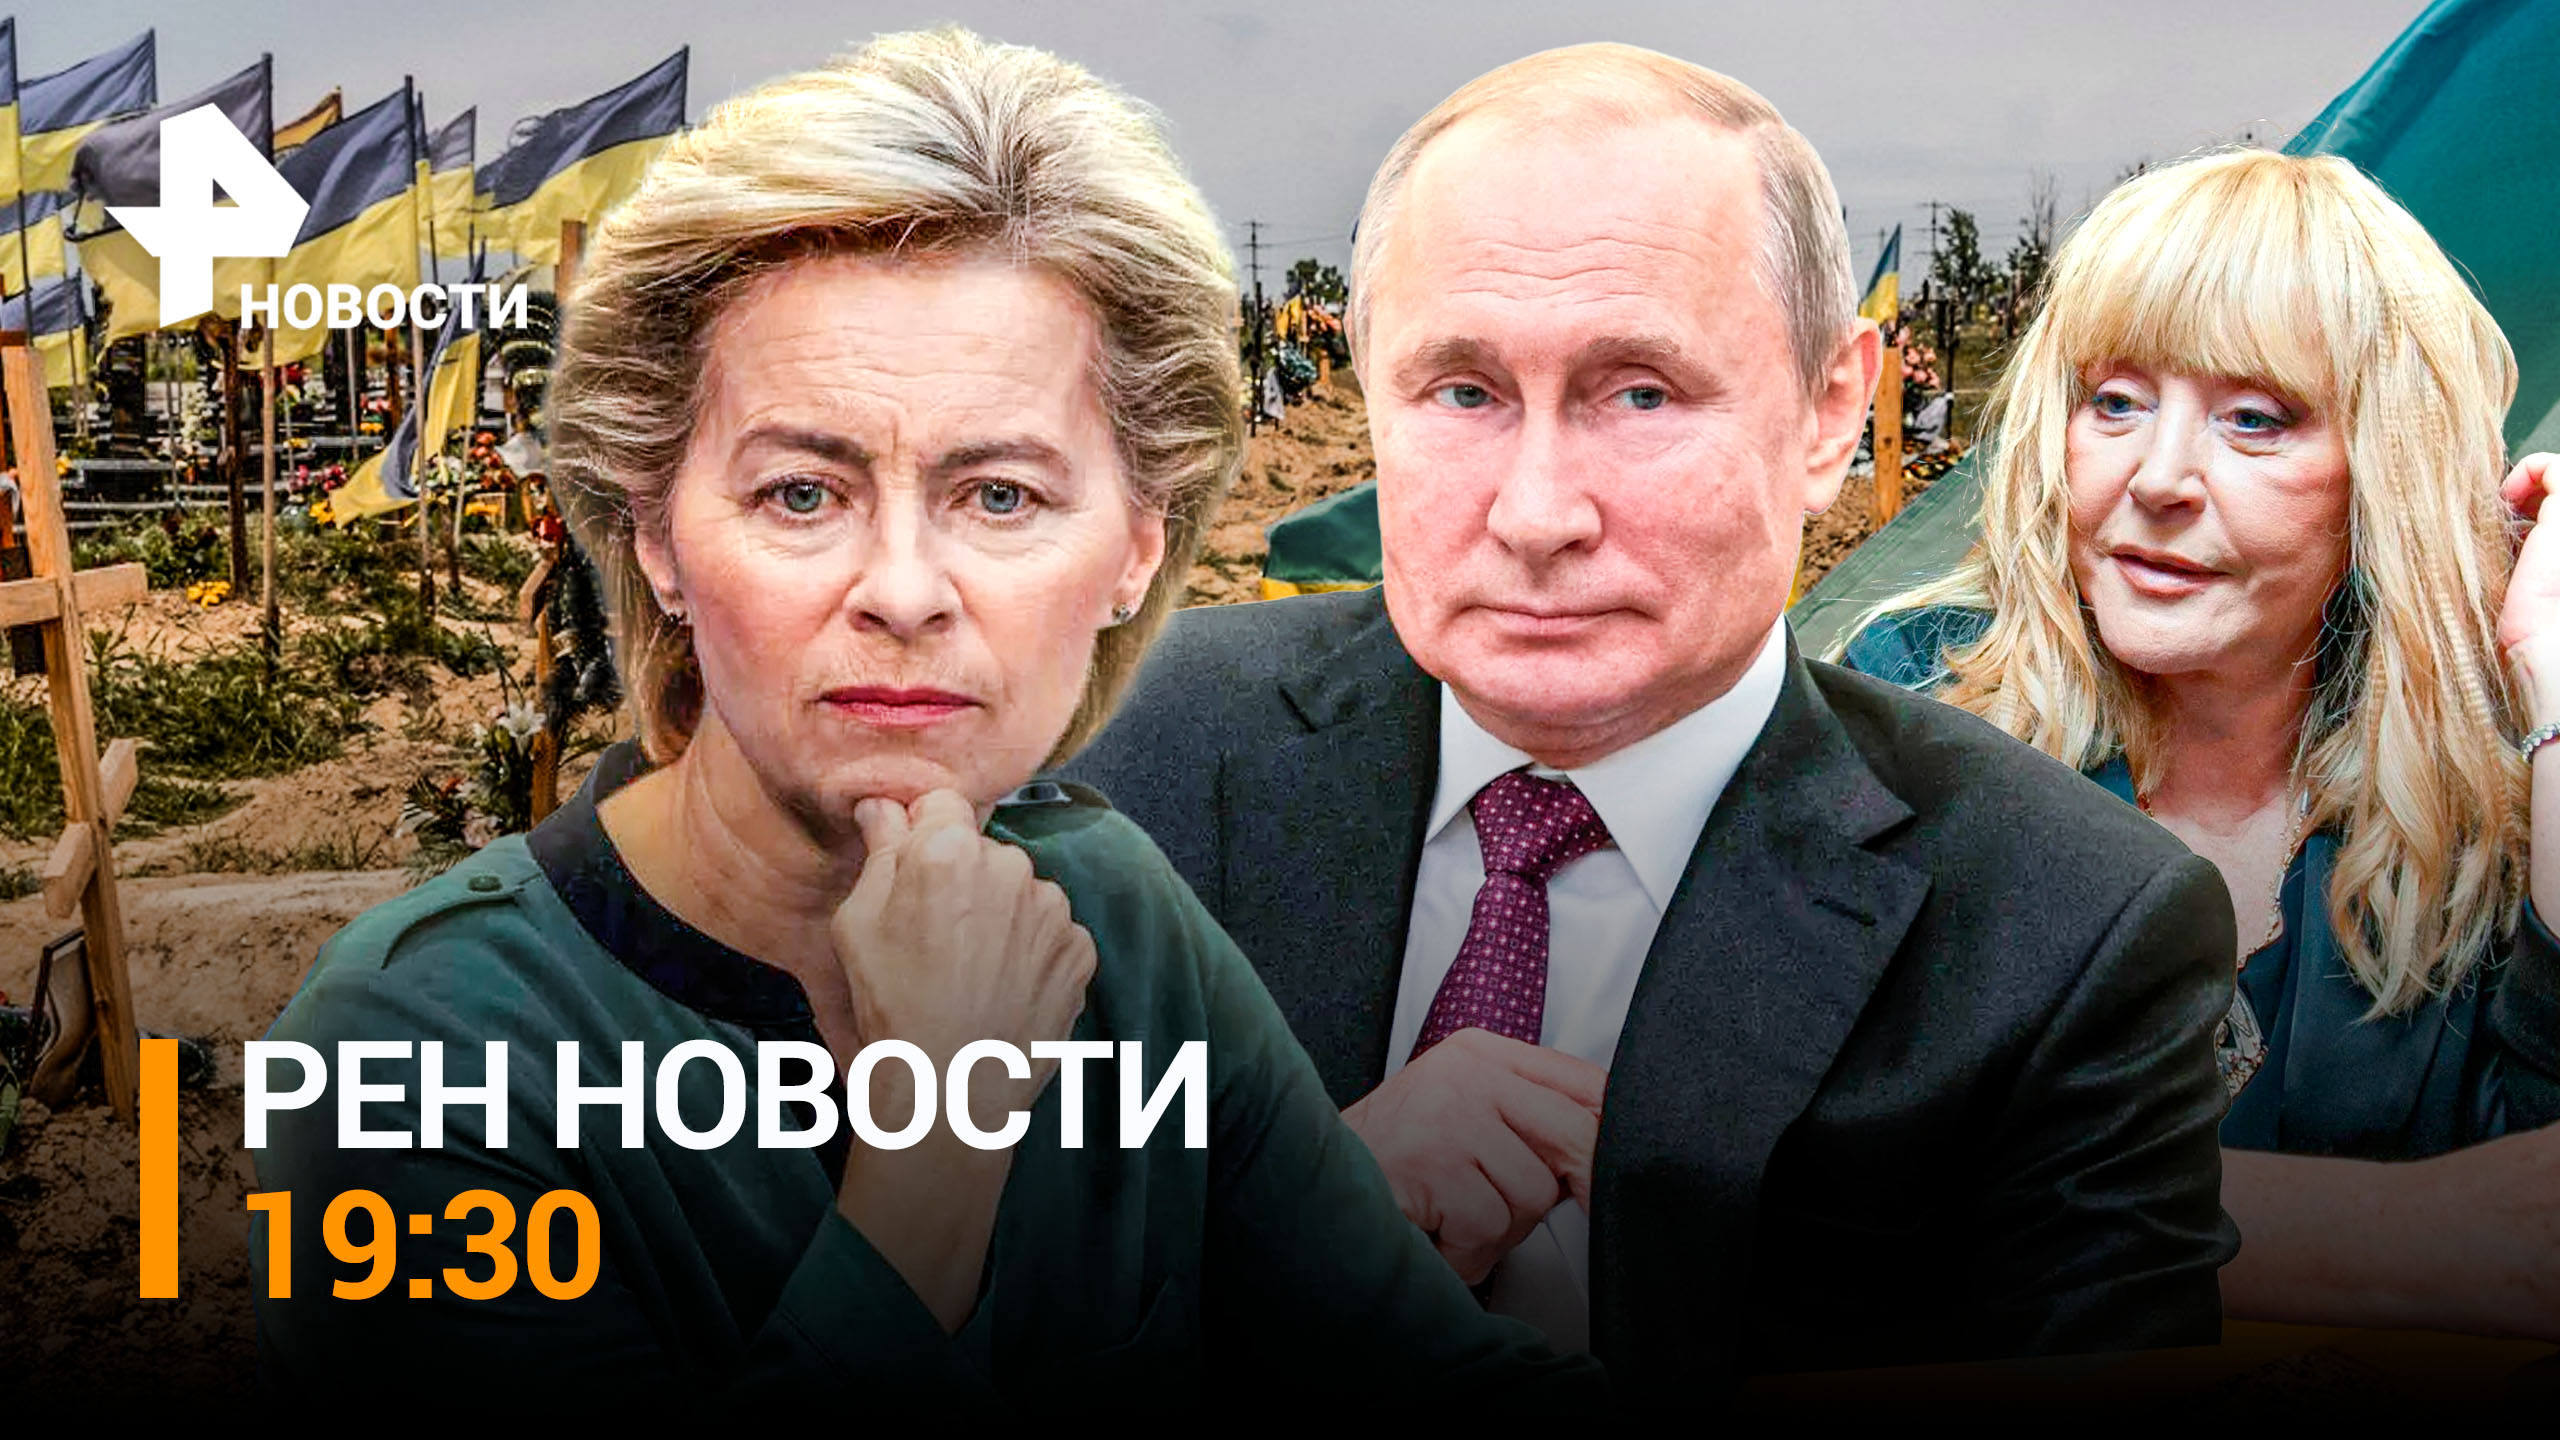 РЕН НОВОСТИ 19:30 от 30.11: ВС РФ перекрыли поставки ВСУ под Бахмутом. Пугачева продала активы в РФ